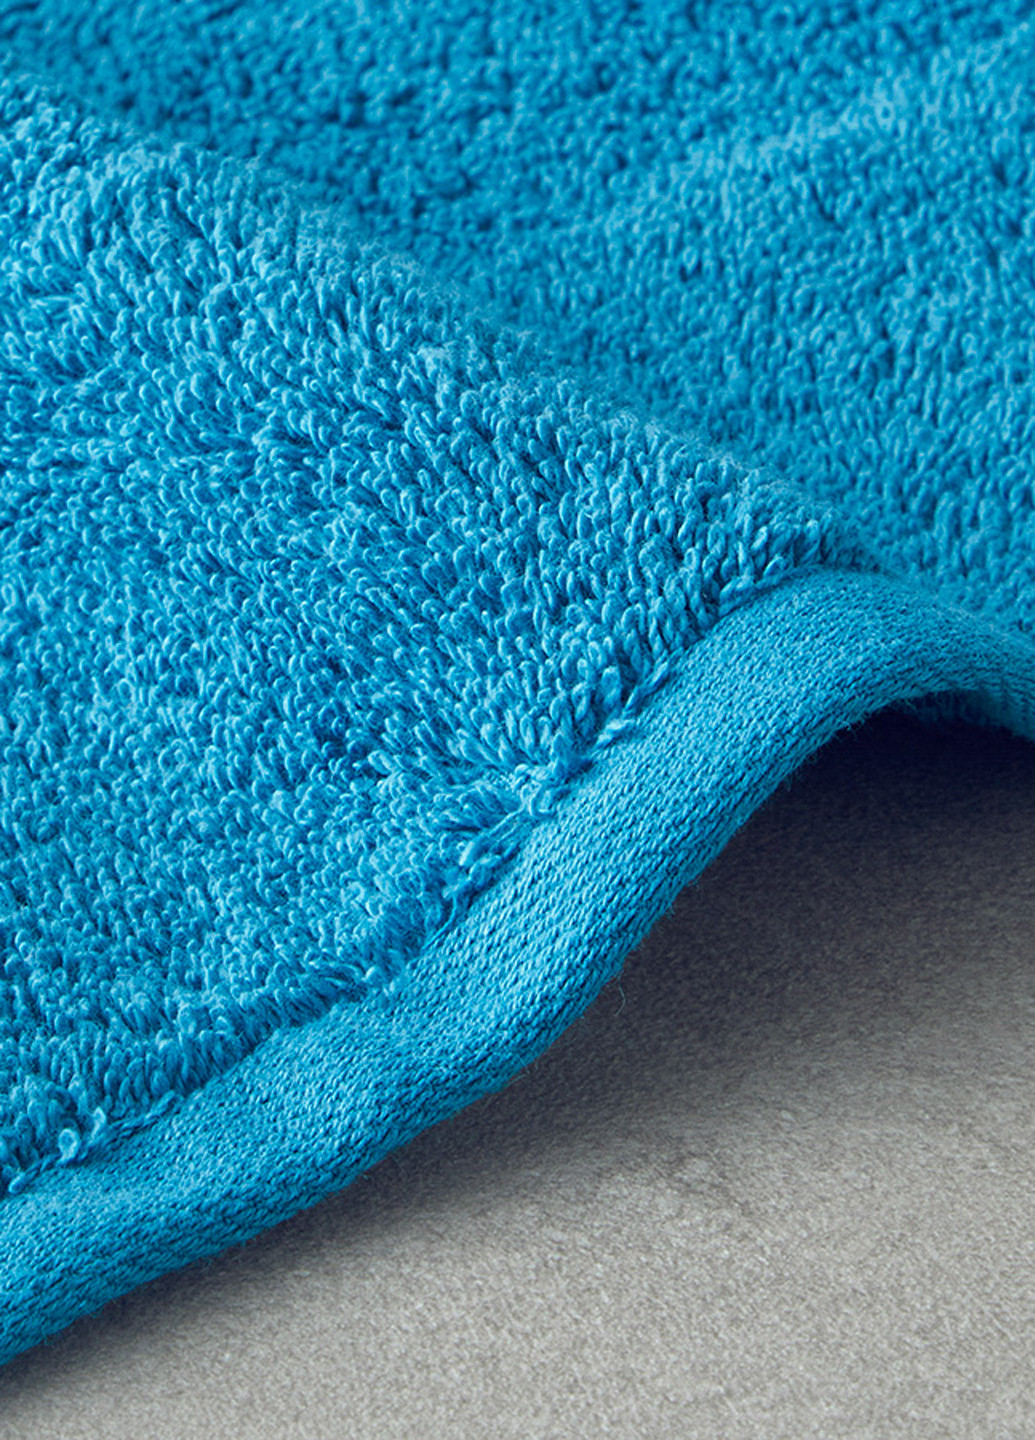 English Home полотенце, 50х80 см однотонный голубой производство - Турция